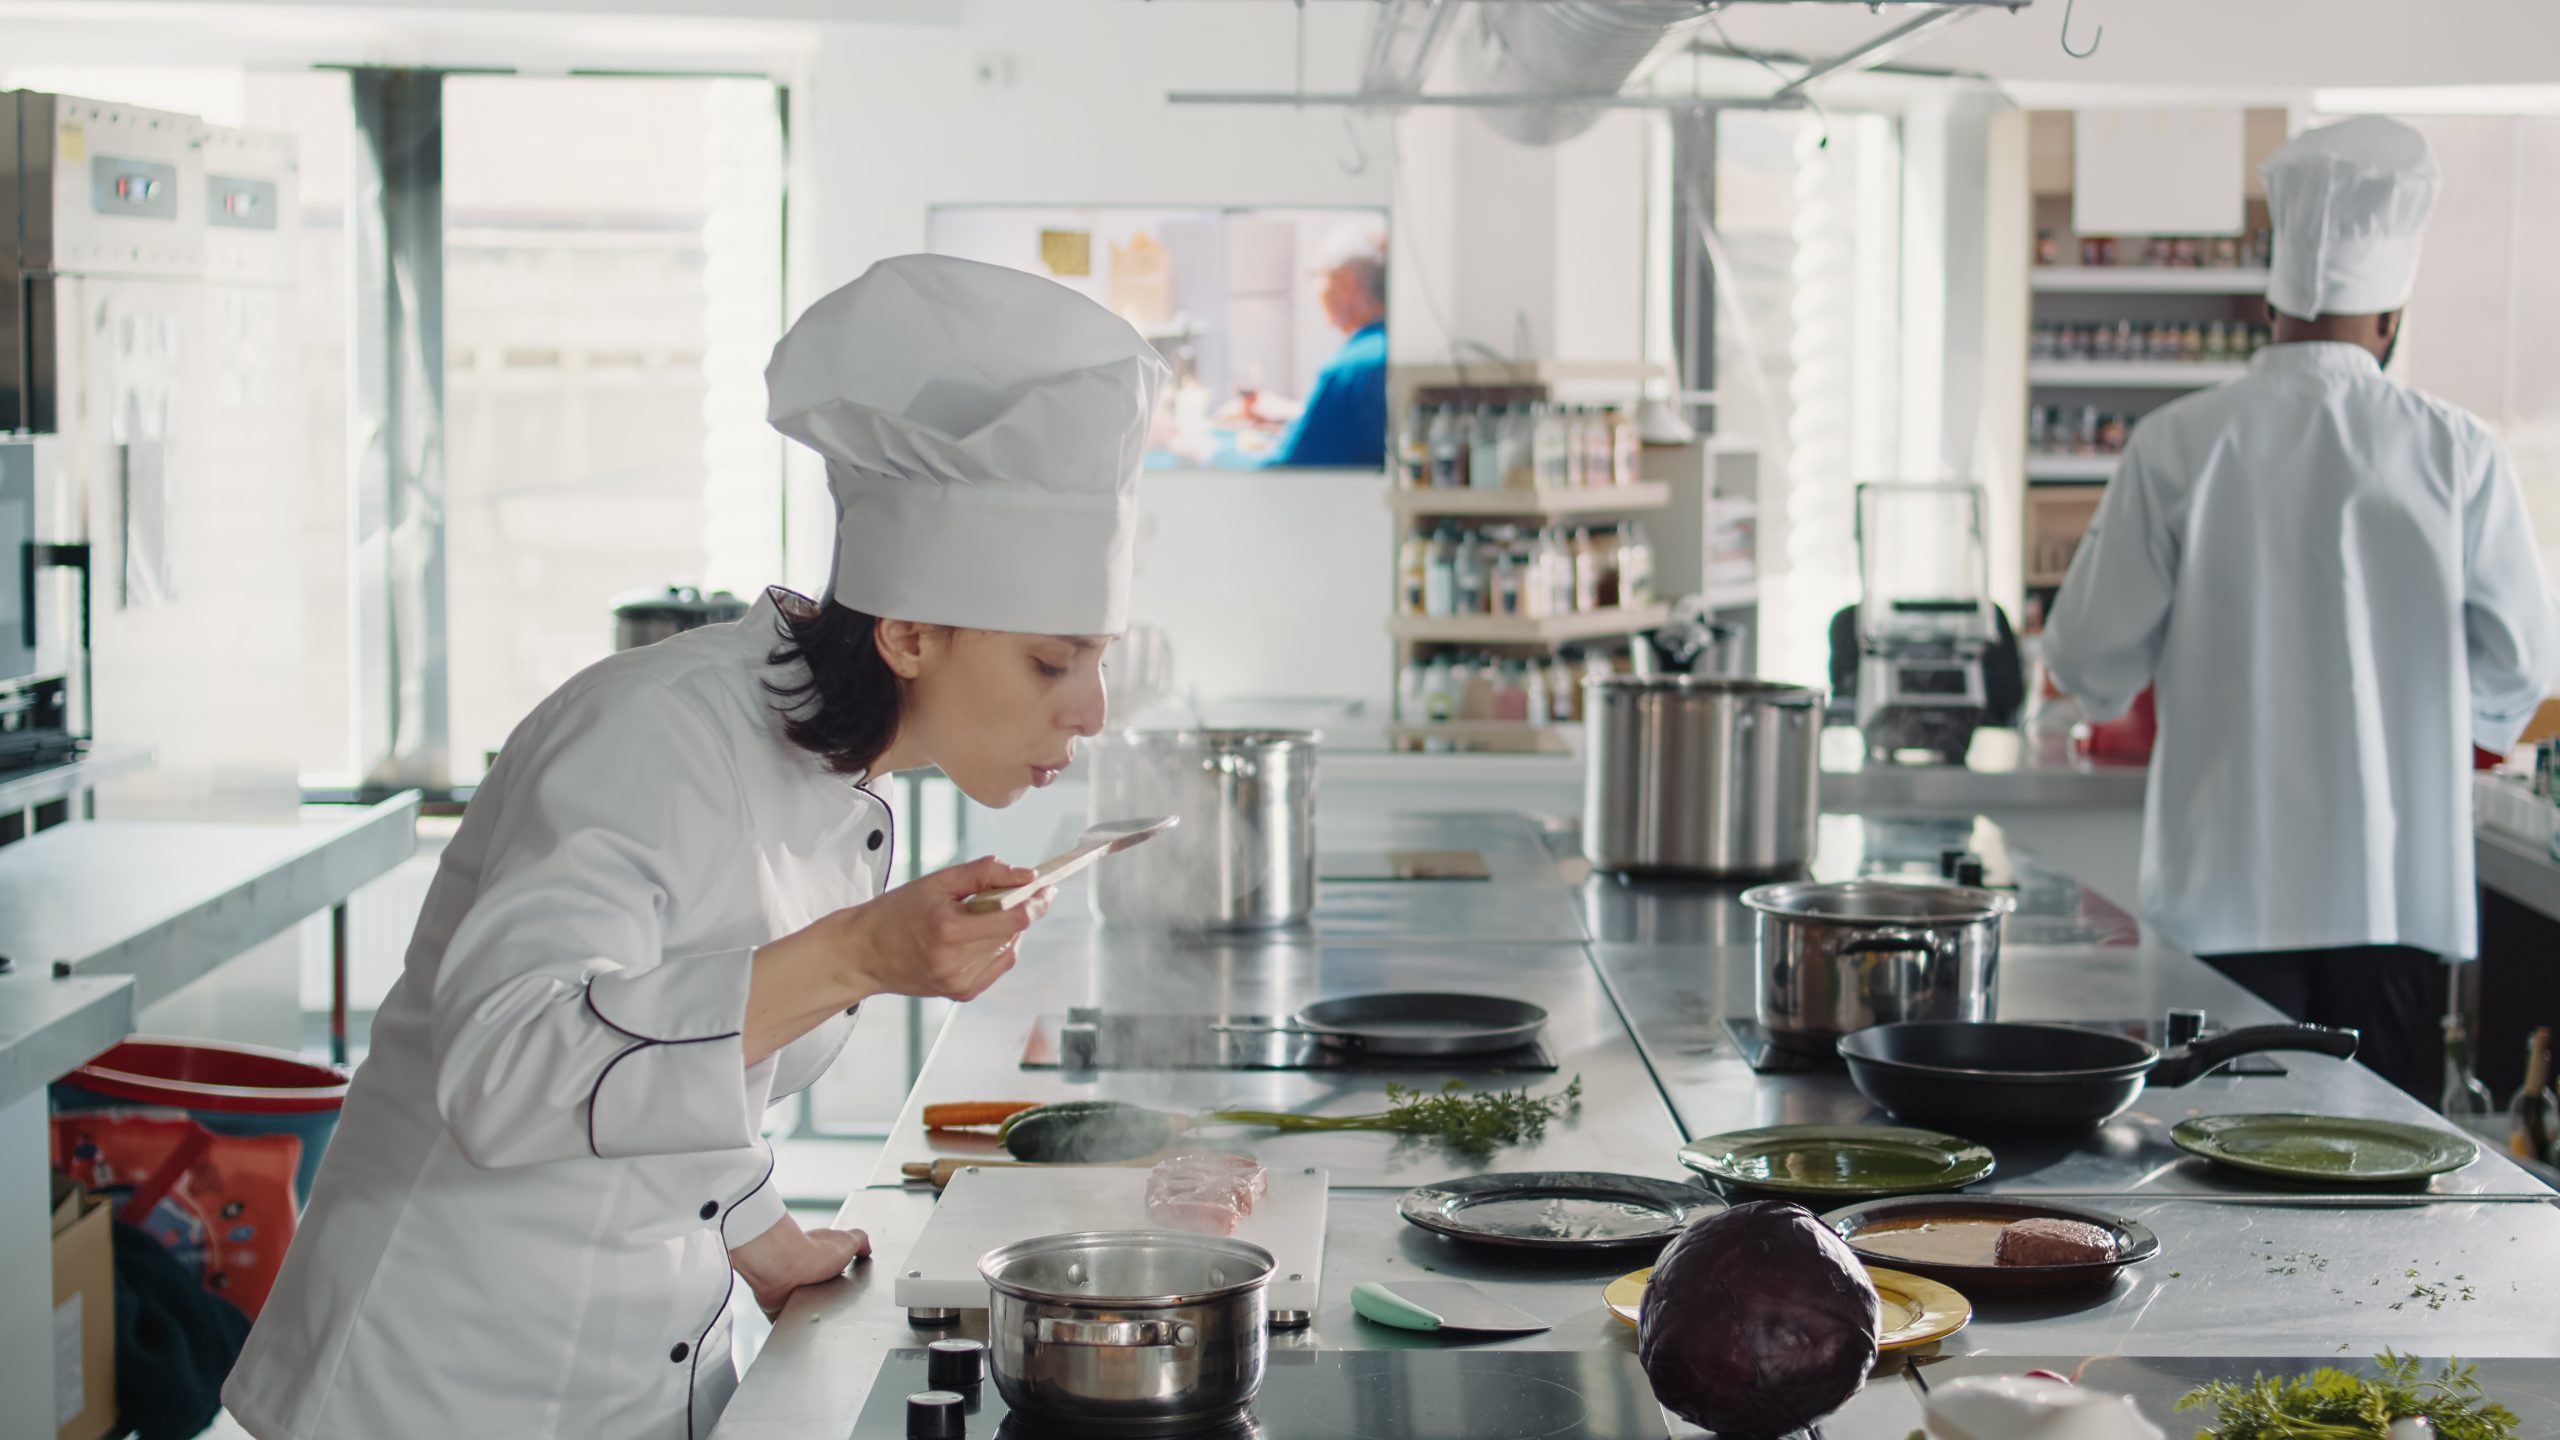 רוכשים מיומנות מקצועית: מה לומדים בלימודי בישול?